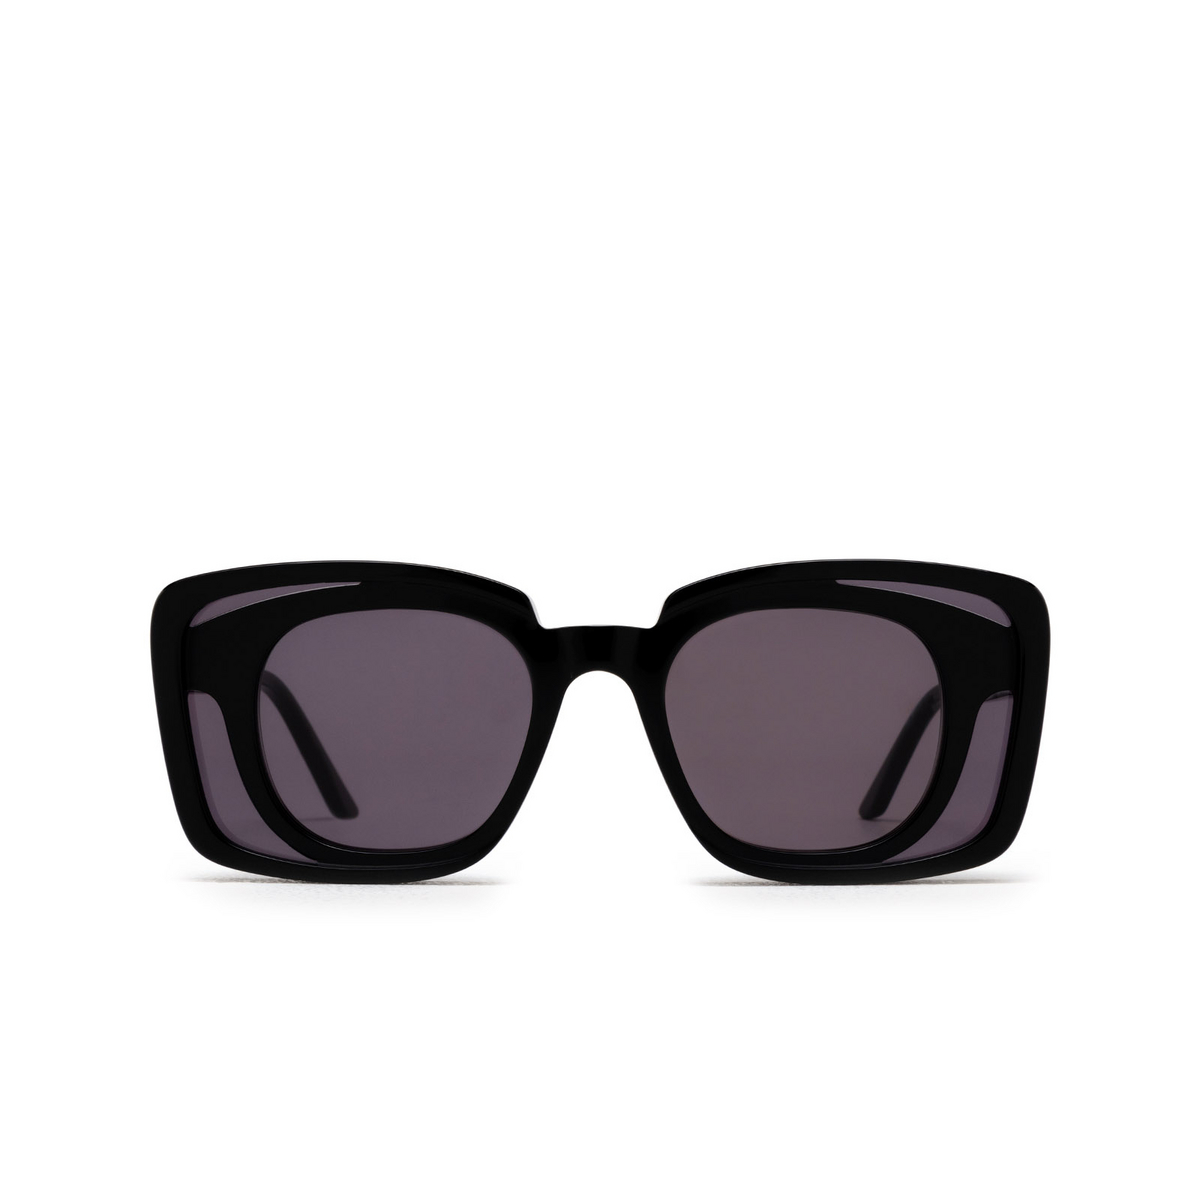 Kuboraum T7 Sunglasses BB Black Shine - front view